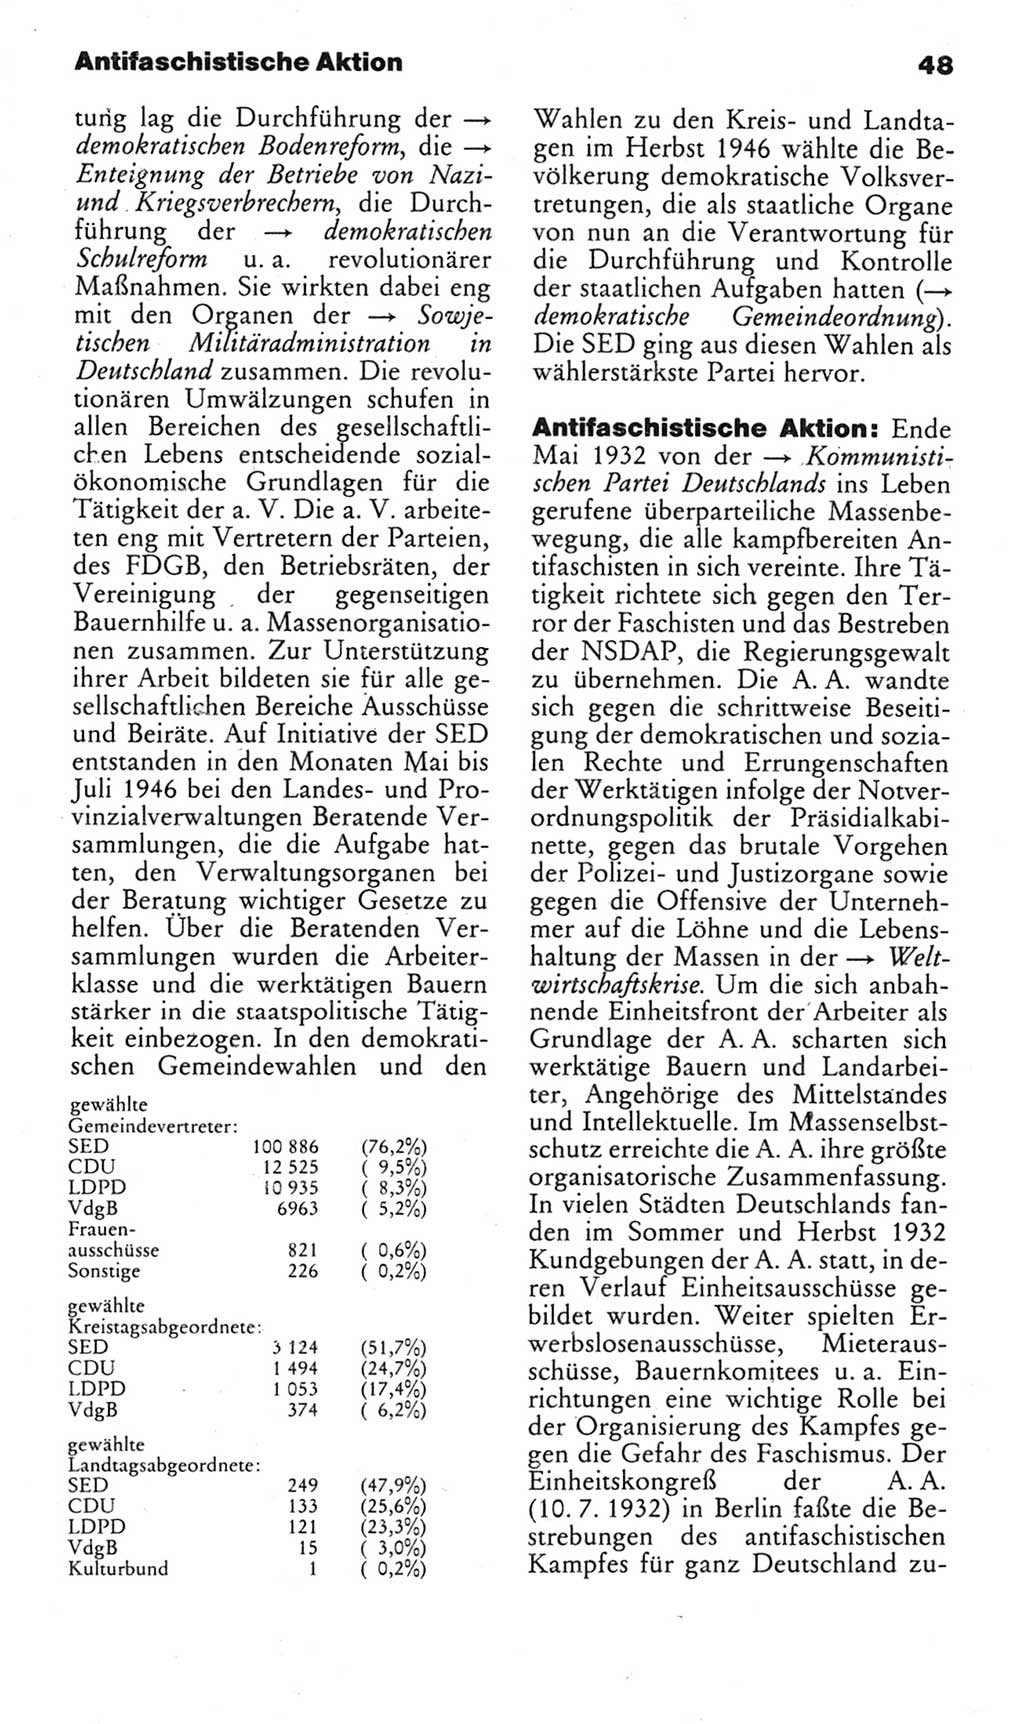 Kleines politisches Wörterbuch [Deutsche Demokratische Republik (DDR)] 1985, Seite 48 (Kl. pol. Wb. DDR 1985, S. 48)